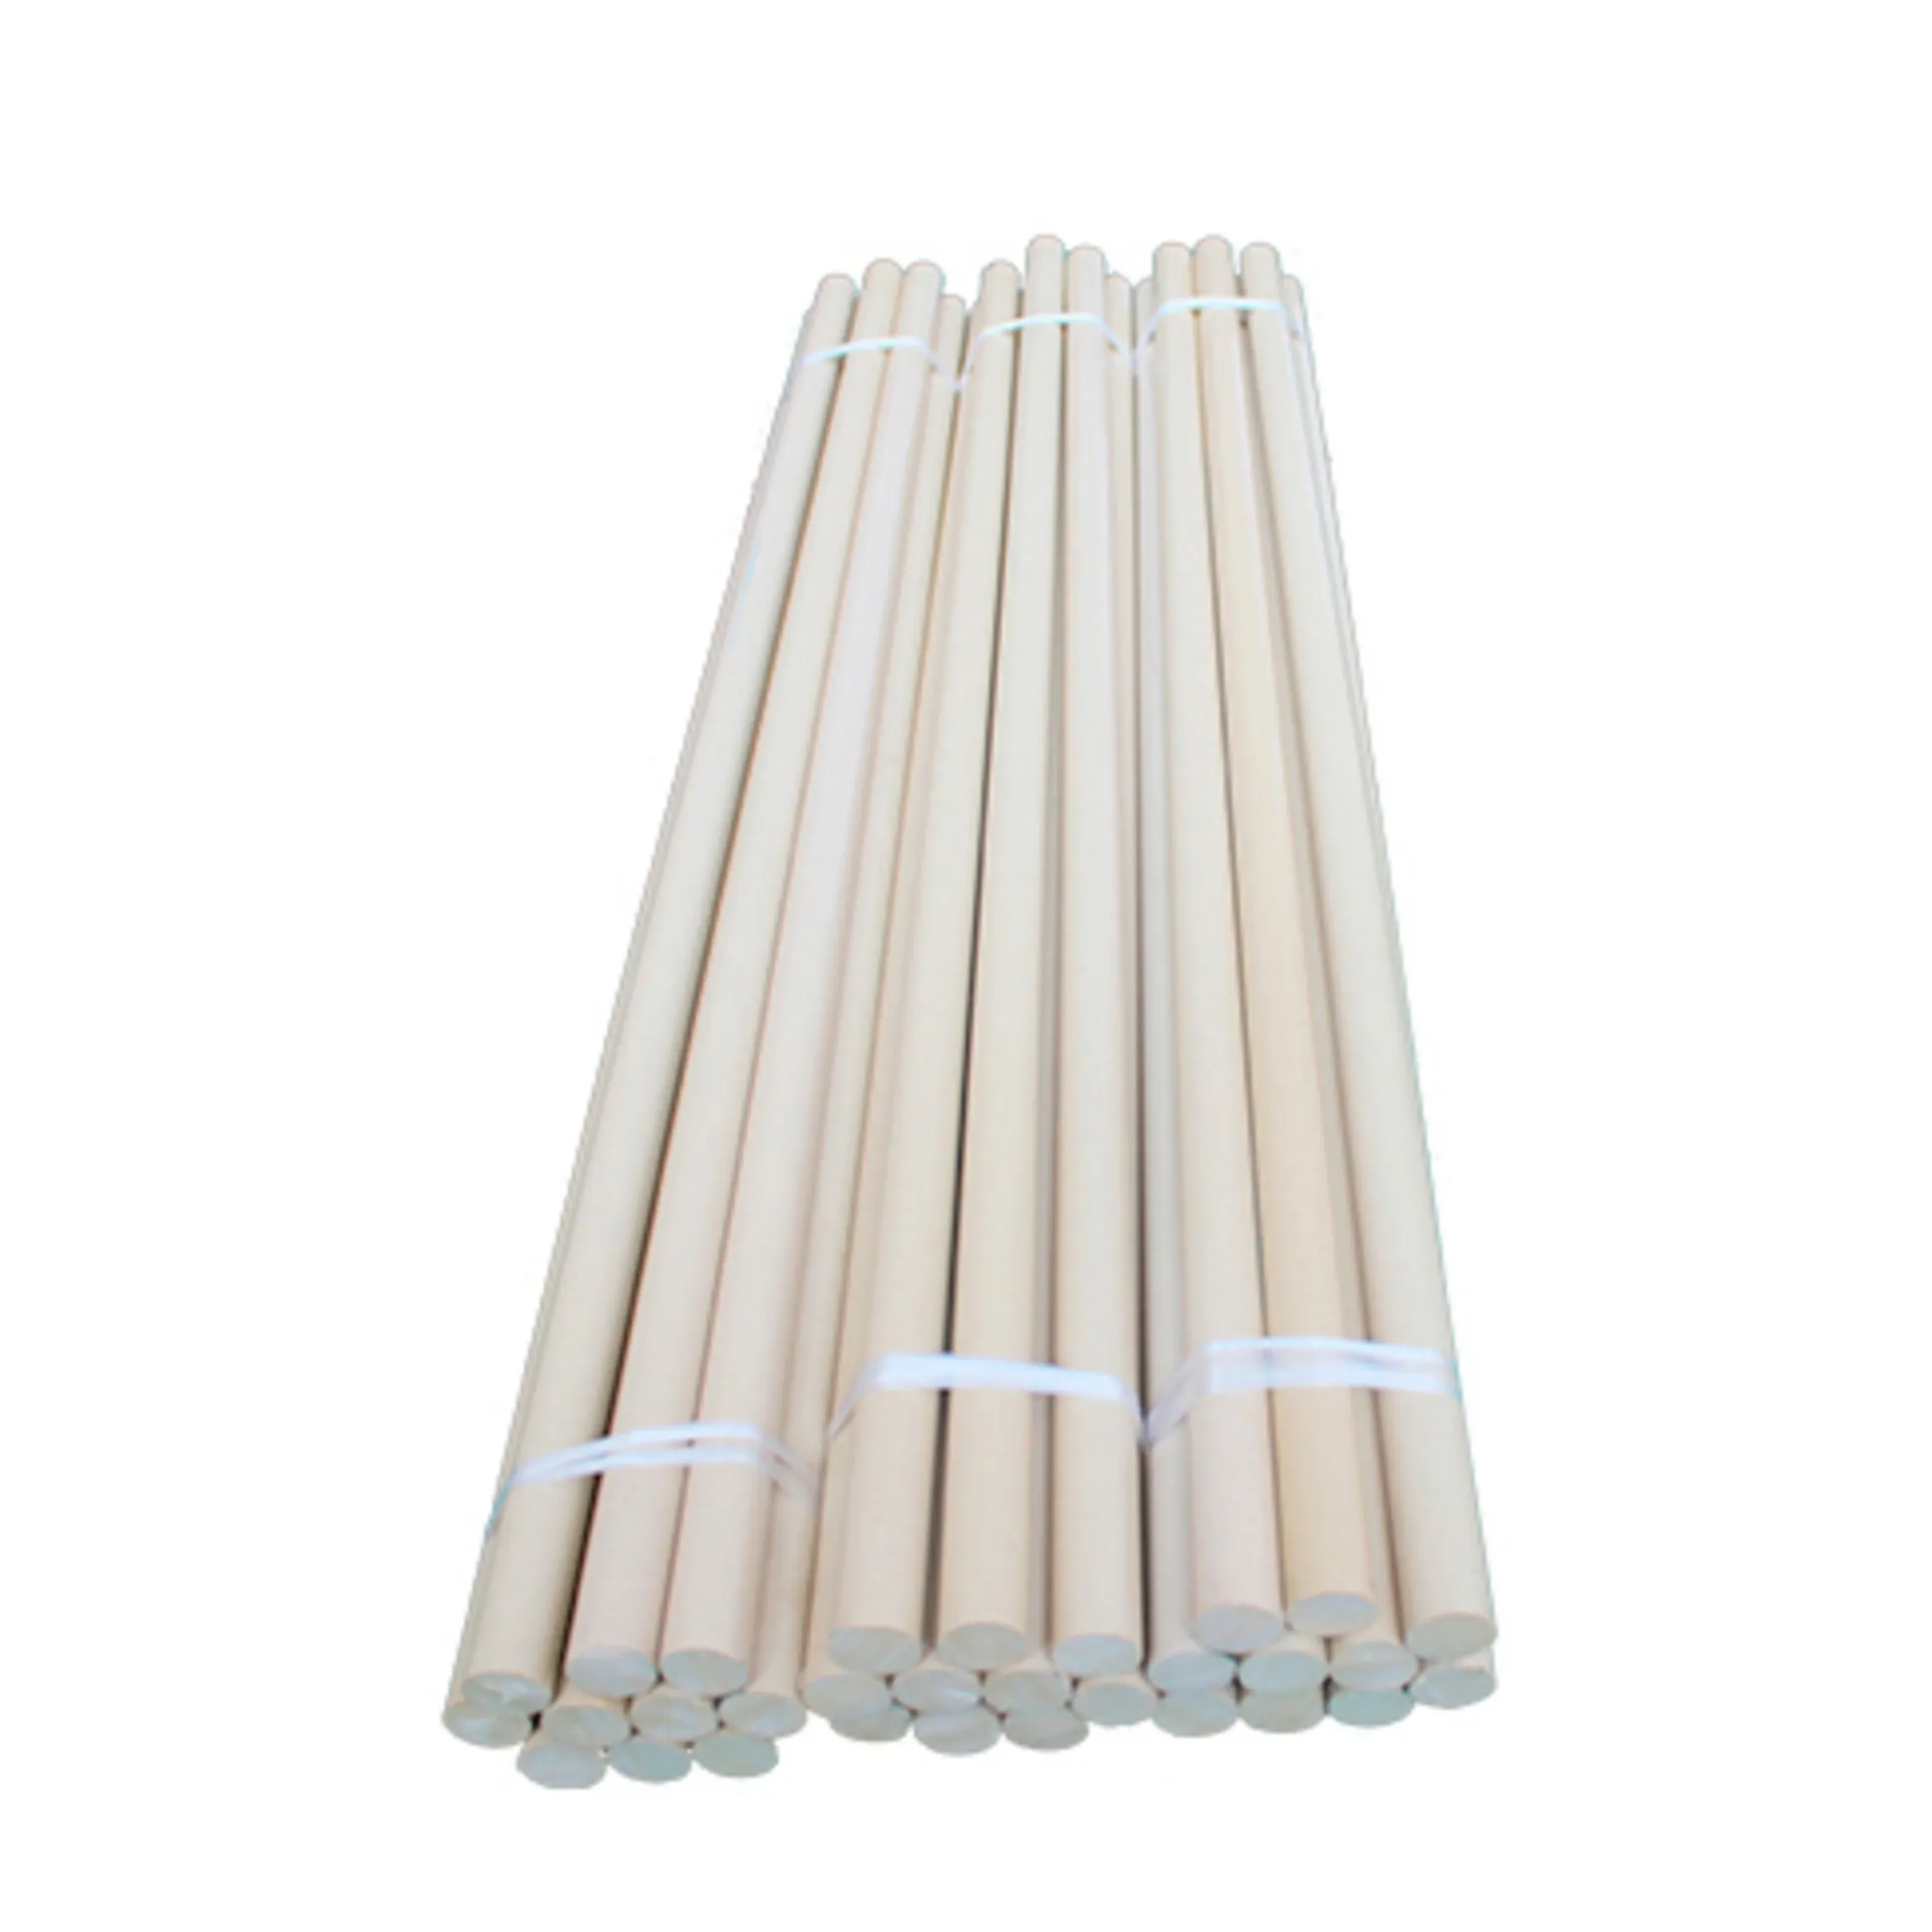 Engineering Wear-resistant And Flame-retardant Engineering Plastic Peek Sticks 100% Virgin Material PEEK Rod/sheet/tube